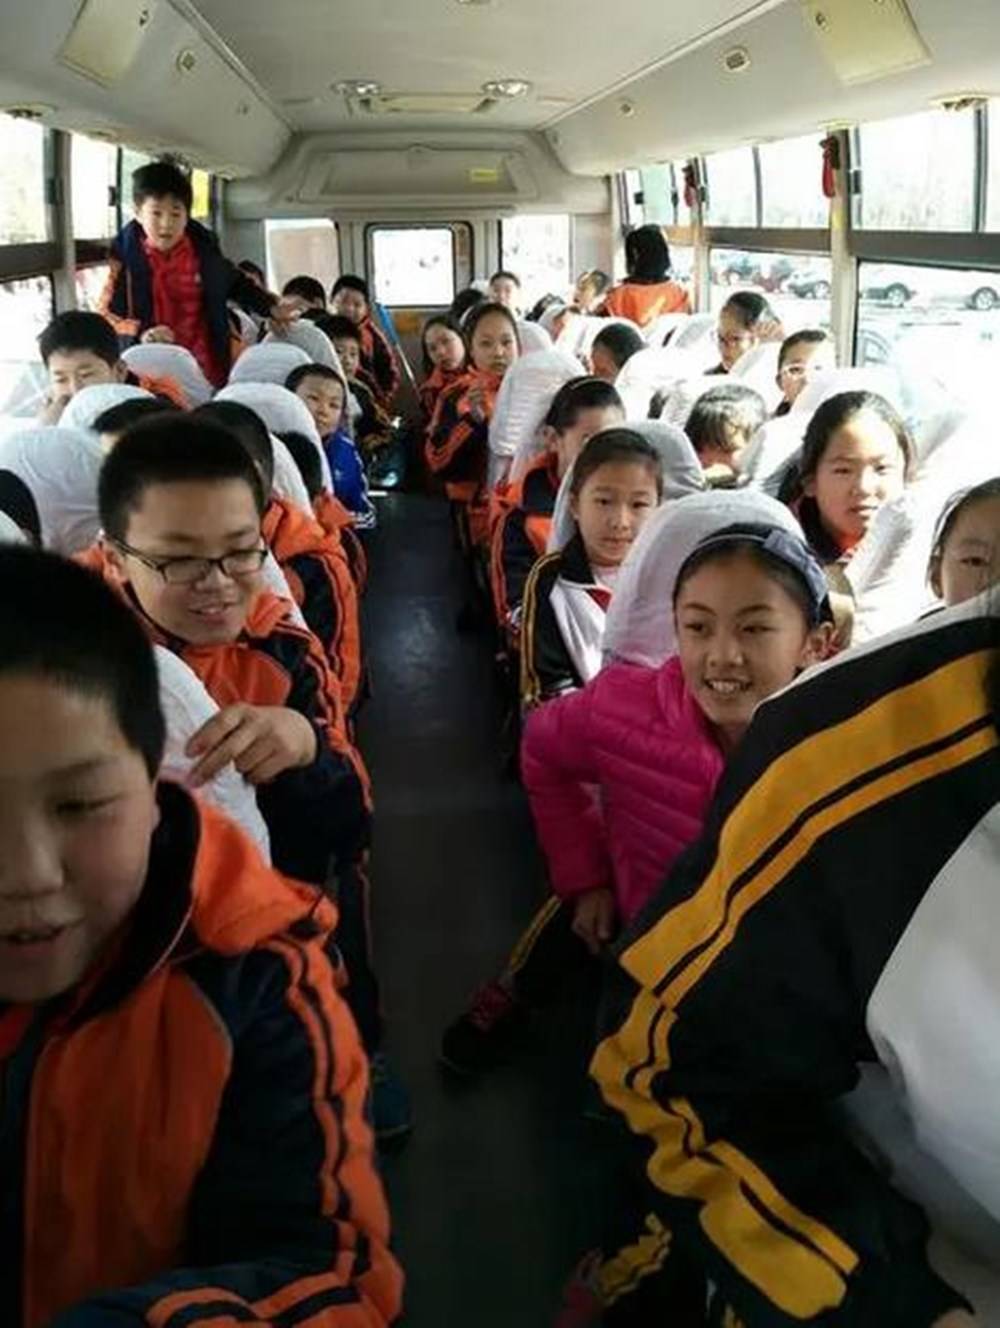 原创上海小学生宁坐校车不坐保时捷妈妈接下来的做法引争议